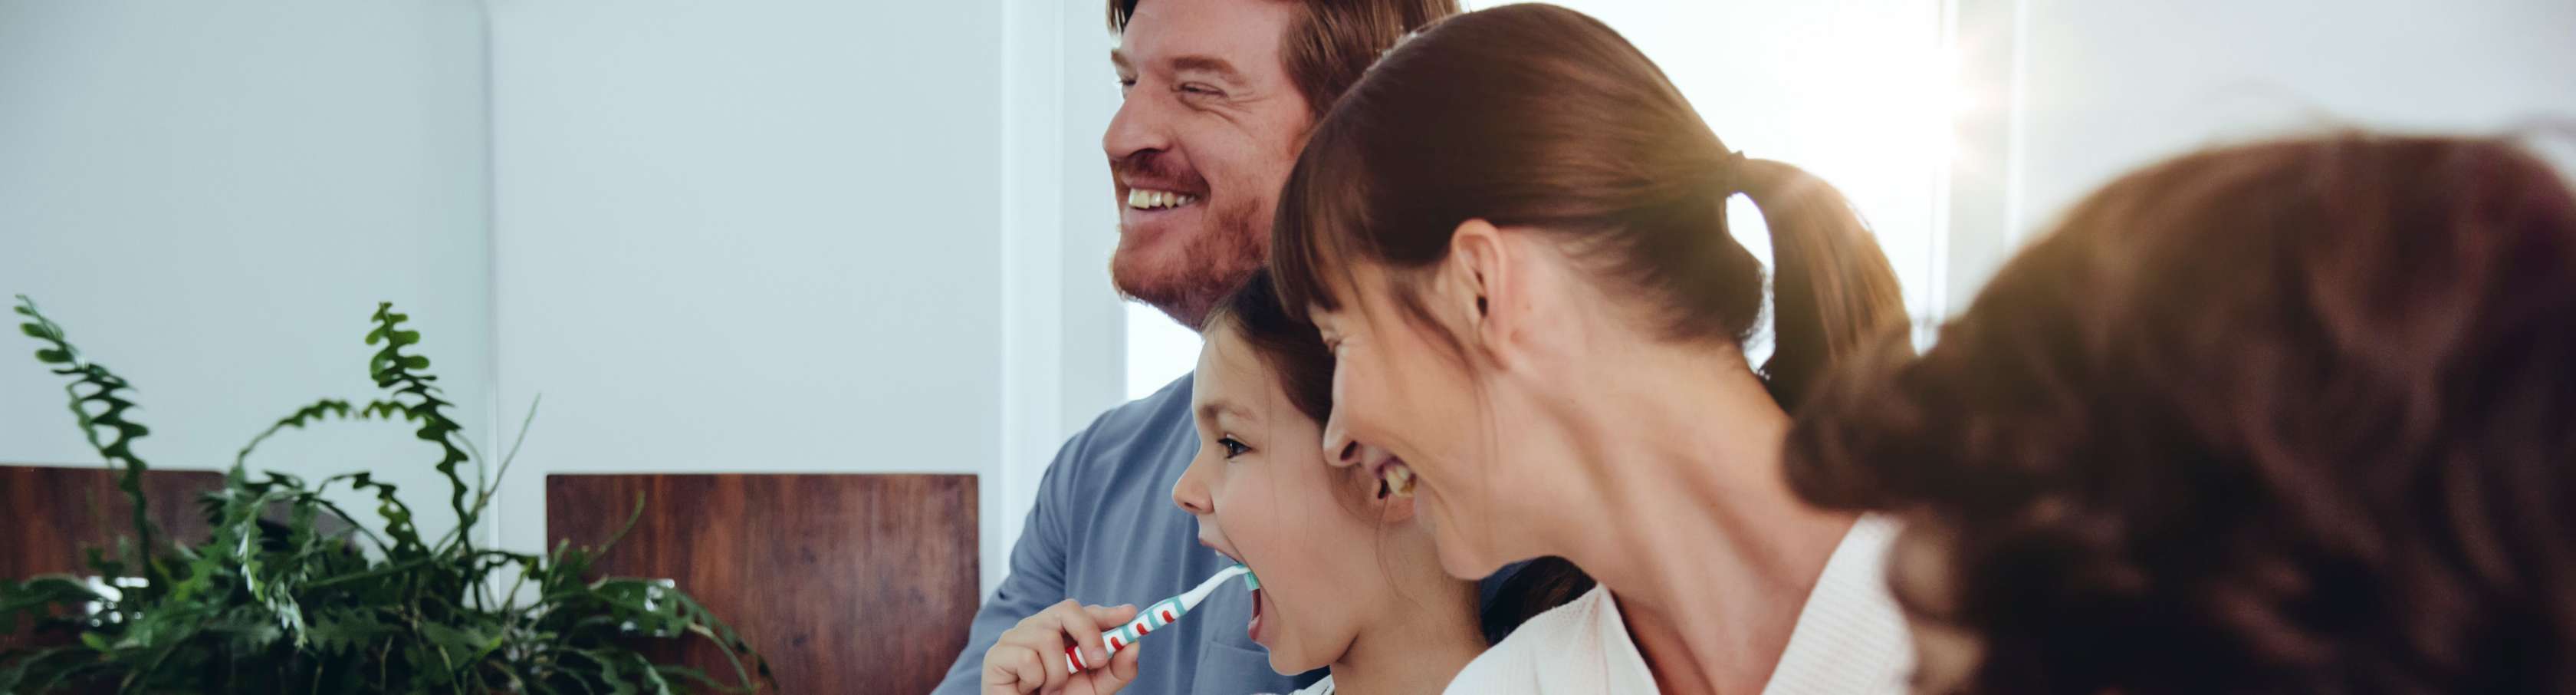 Zahnzusatzversicherung für Familien: Hilfreiche Infos und Vorteile für alle Familienmitglieder